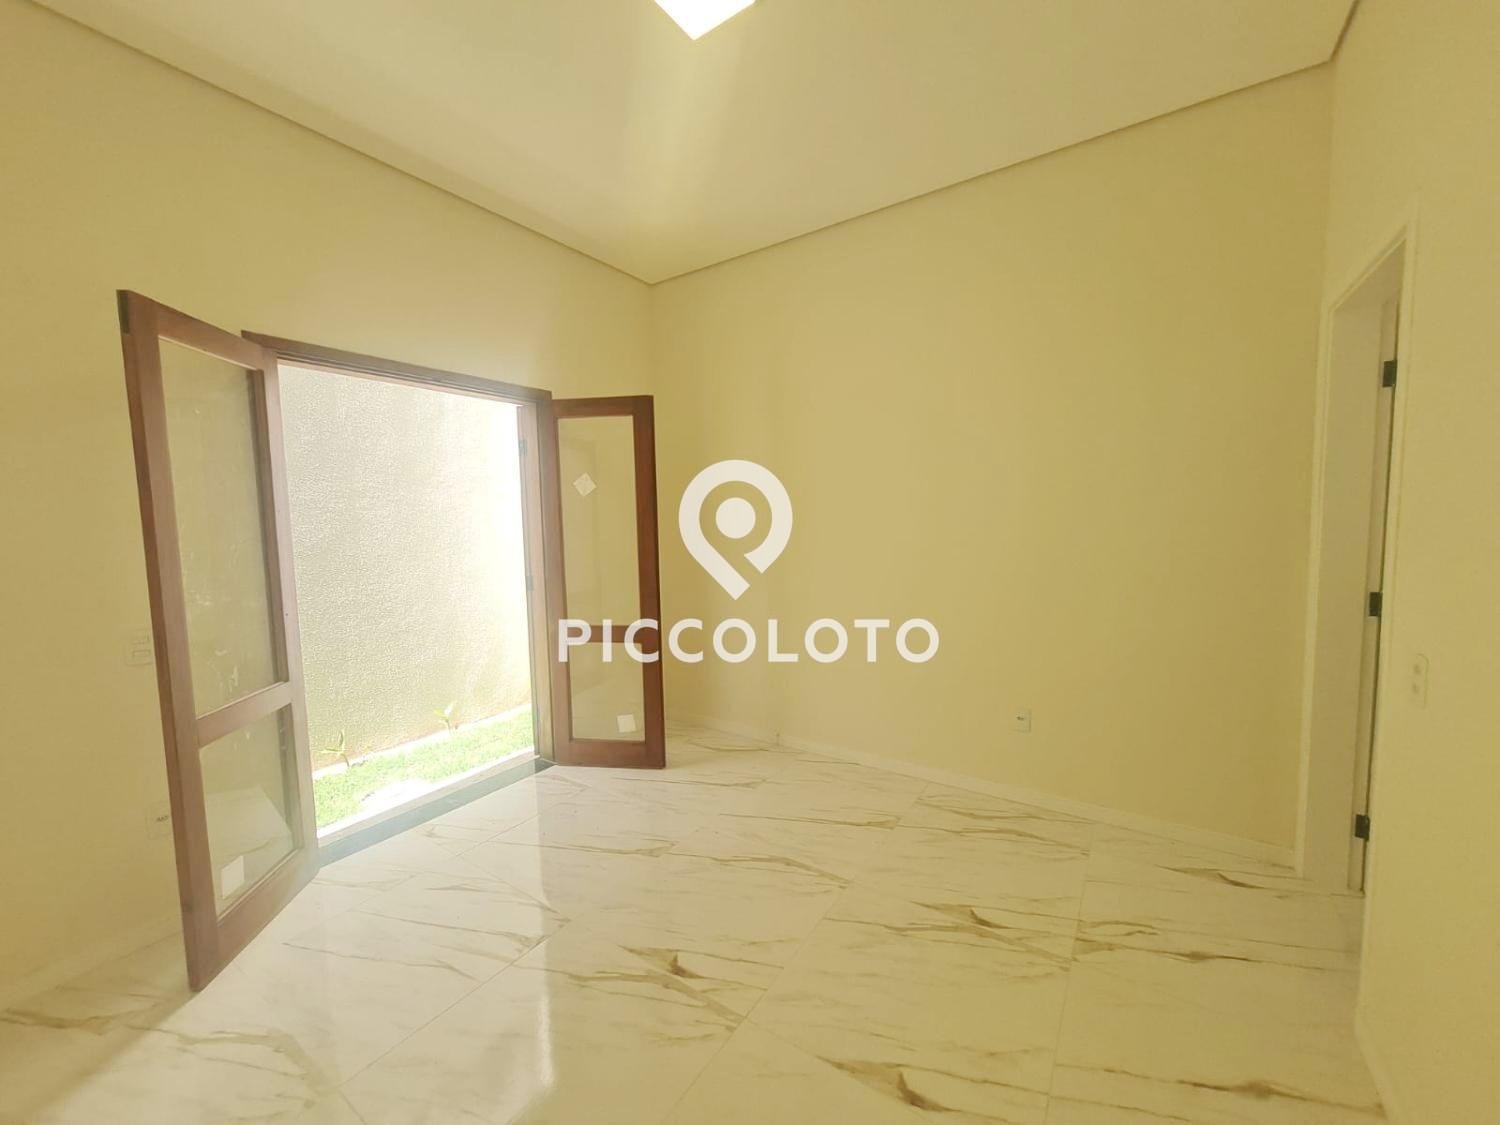 Piccoloto -Casa à venda no Residencial Parque da Fazenda em Campinas